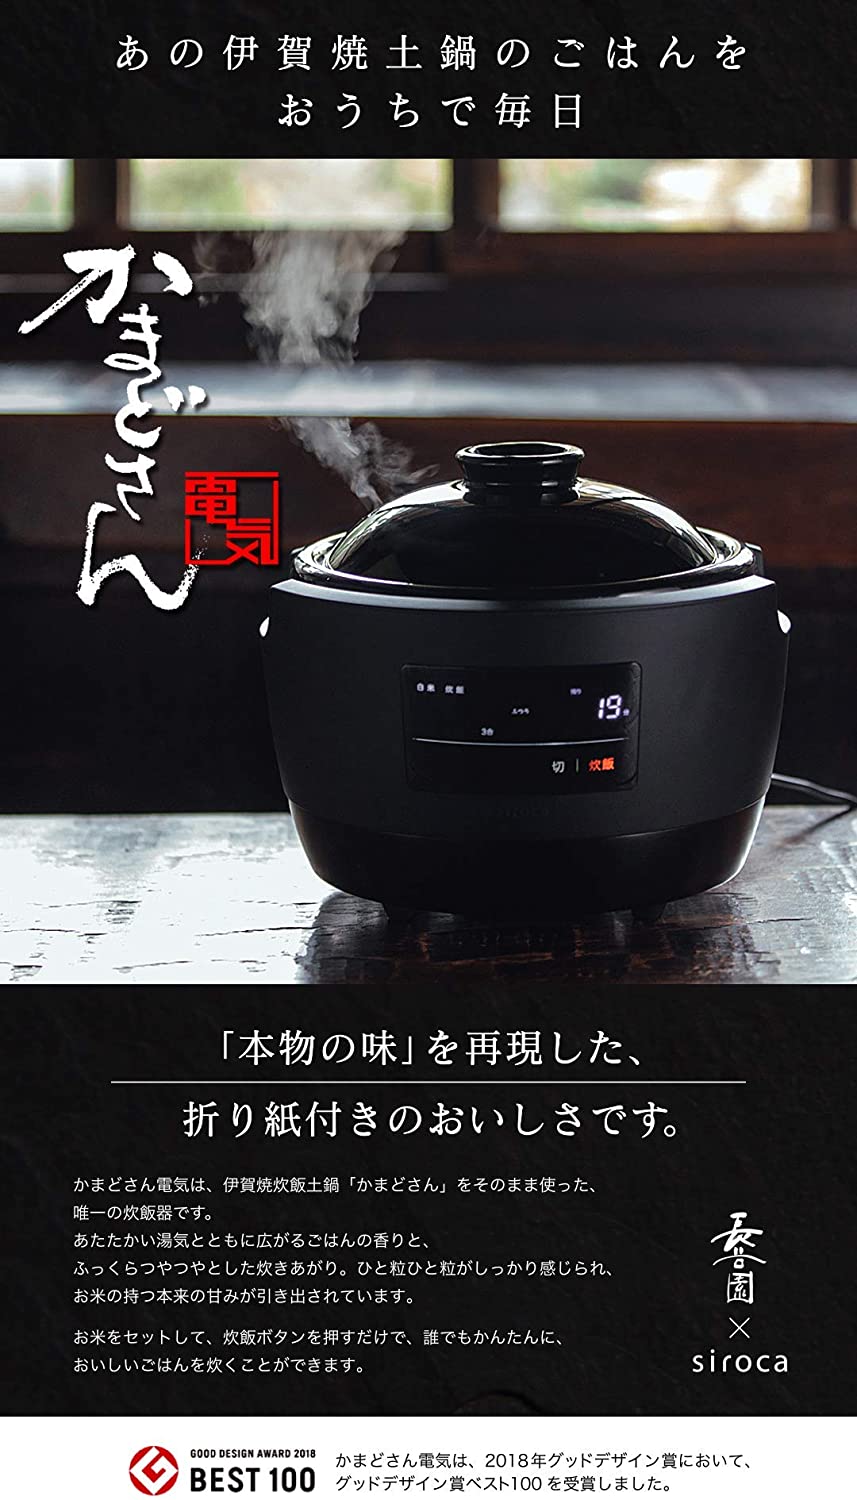 【siroca】シロカ 全自動炊飯土鍋 かまどさん